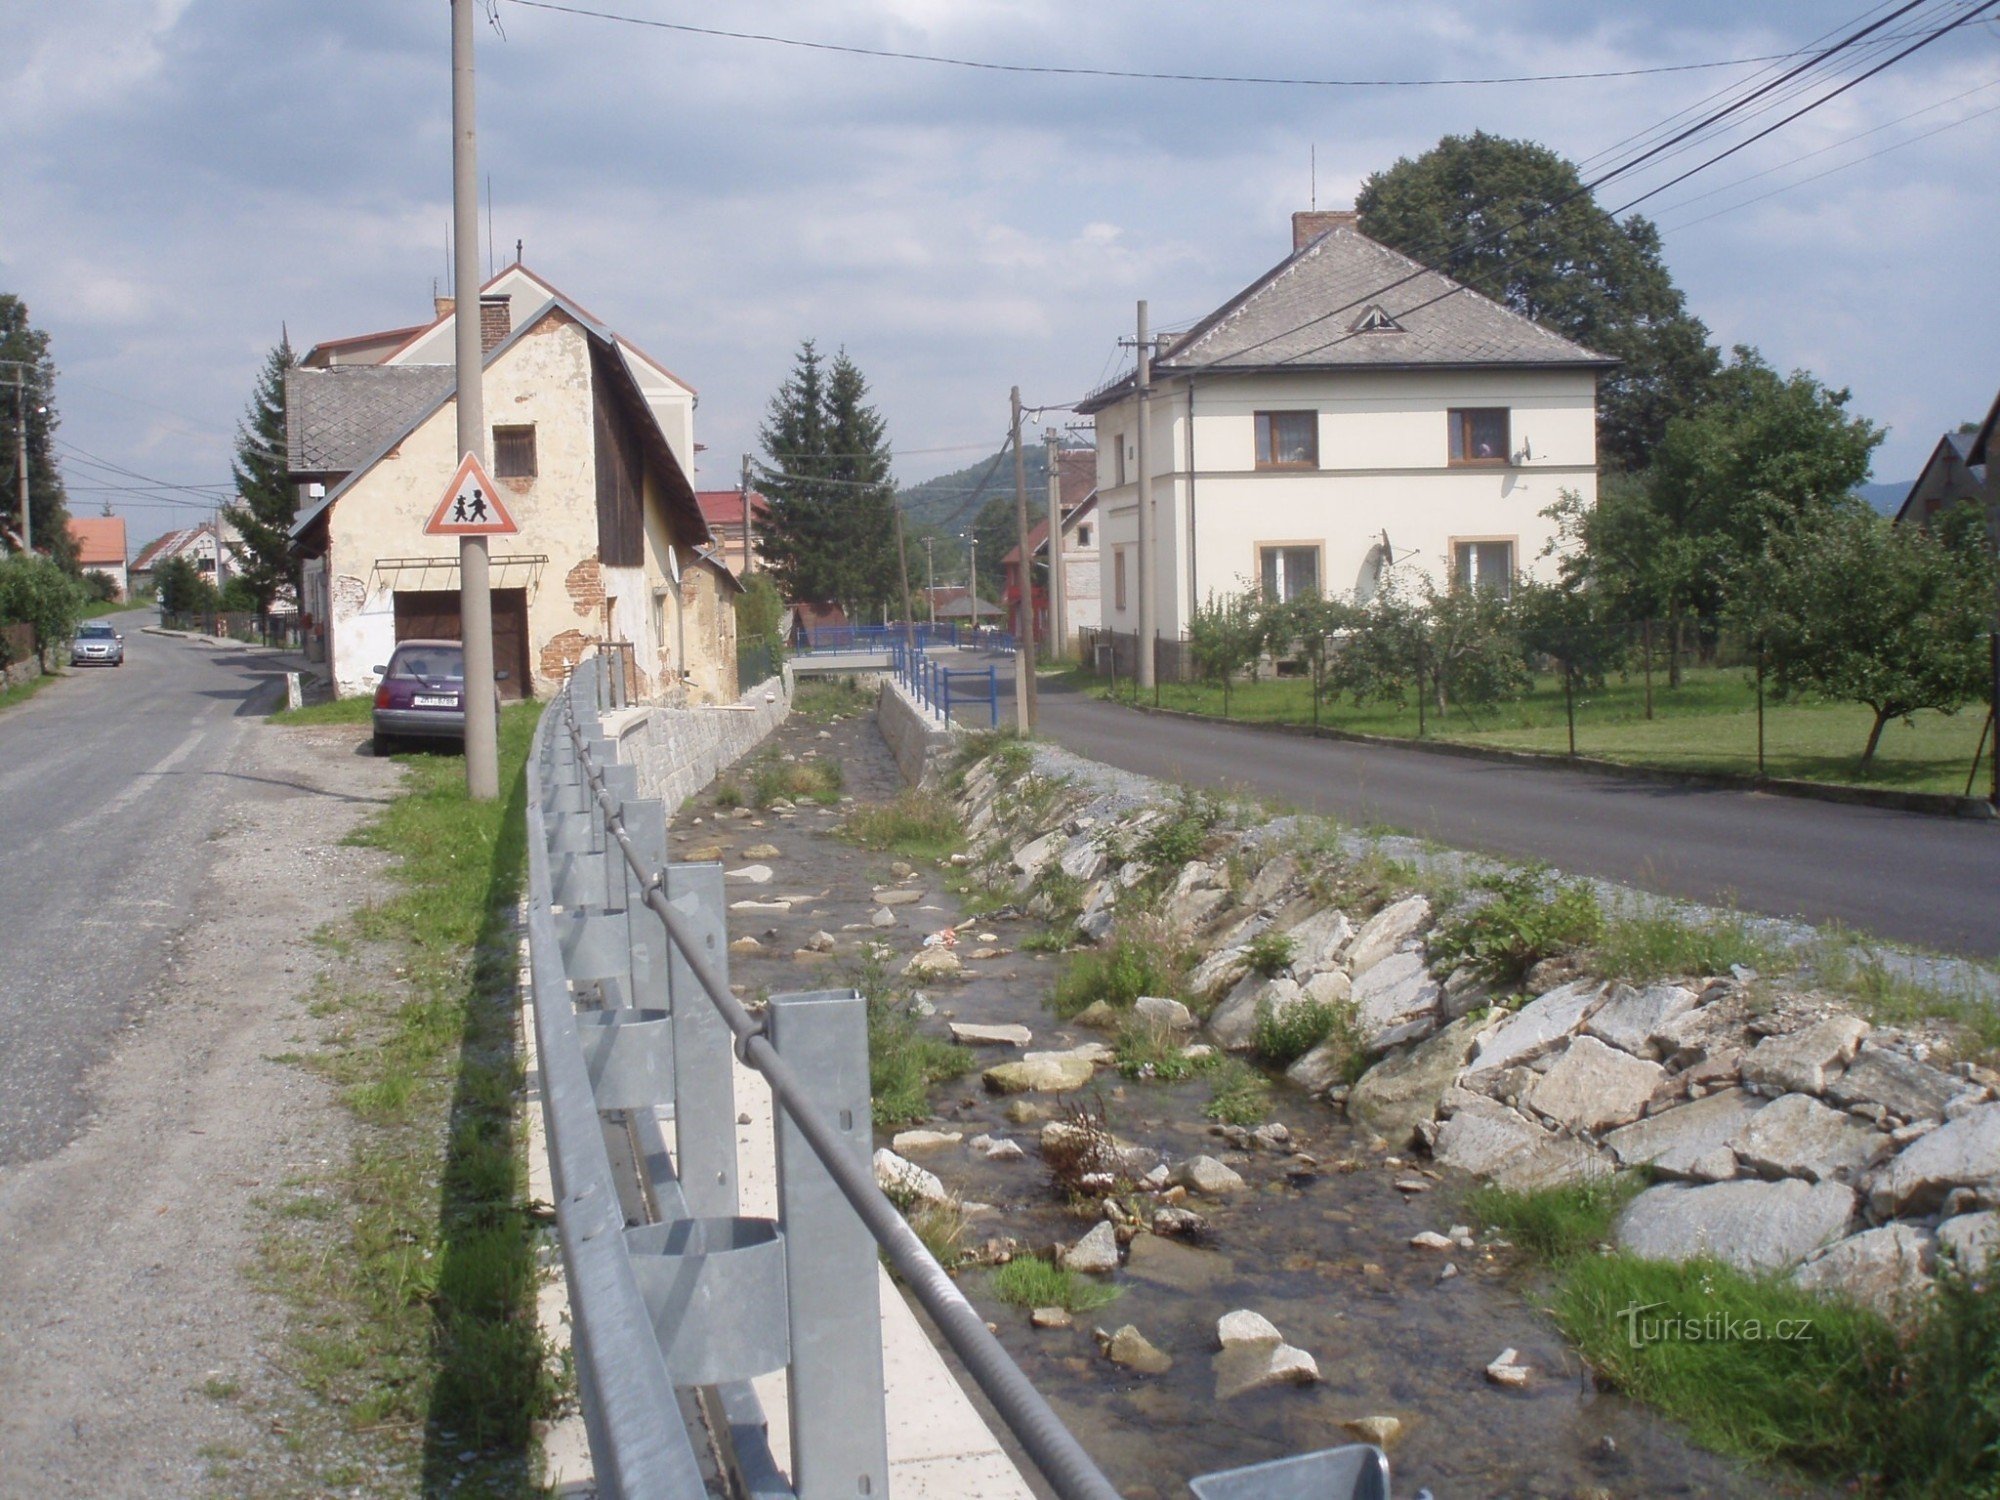 άλλο μέρος των μέτρων πρόληψης των πλημμυρών από το Lesa ČR